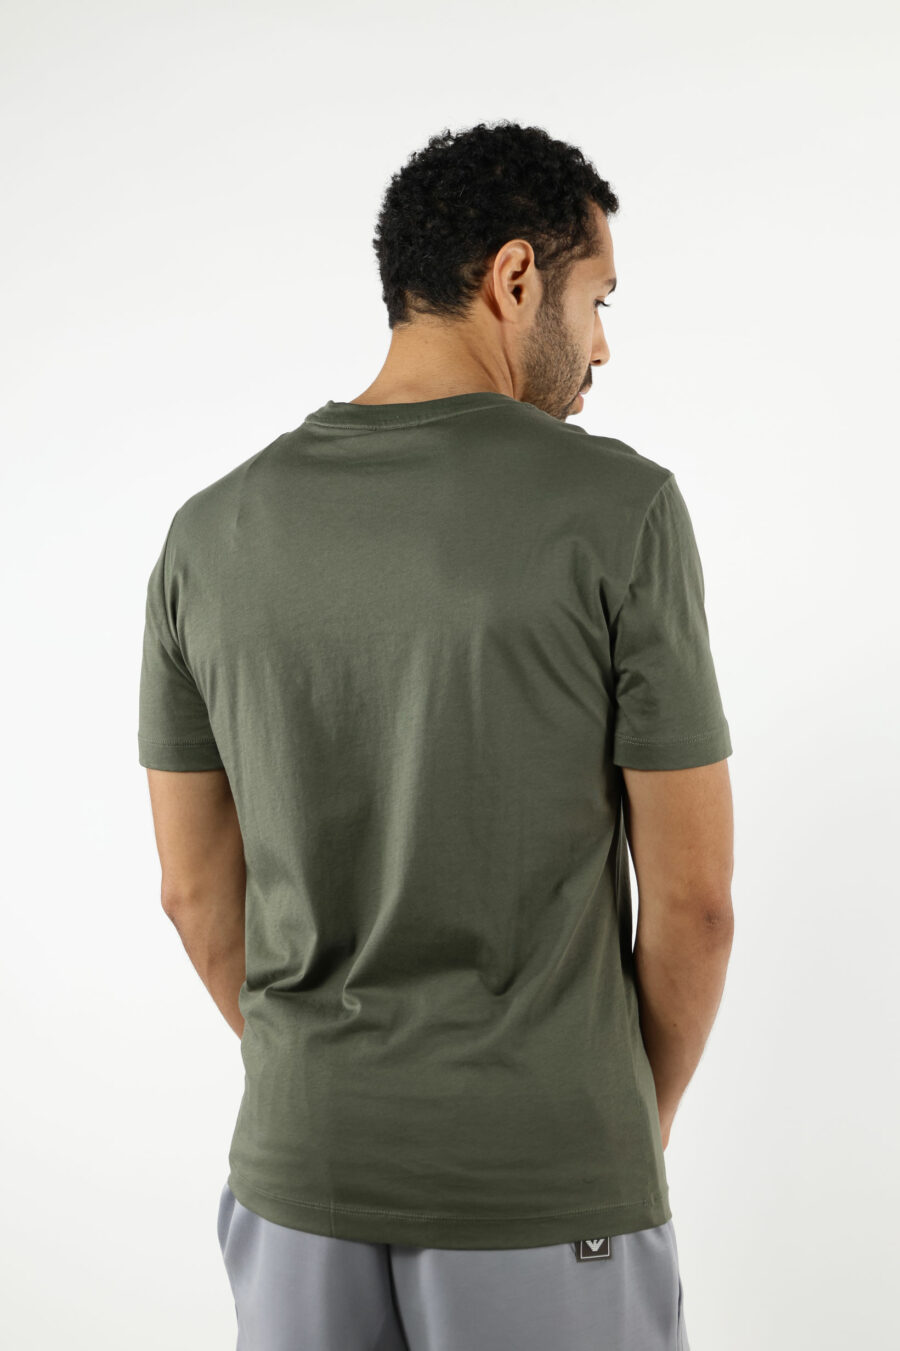 T-shirt vert avec maxilogo "lux identity" dégradé - 110935